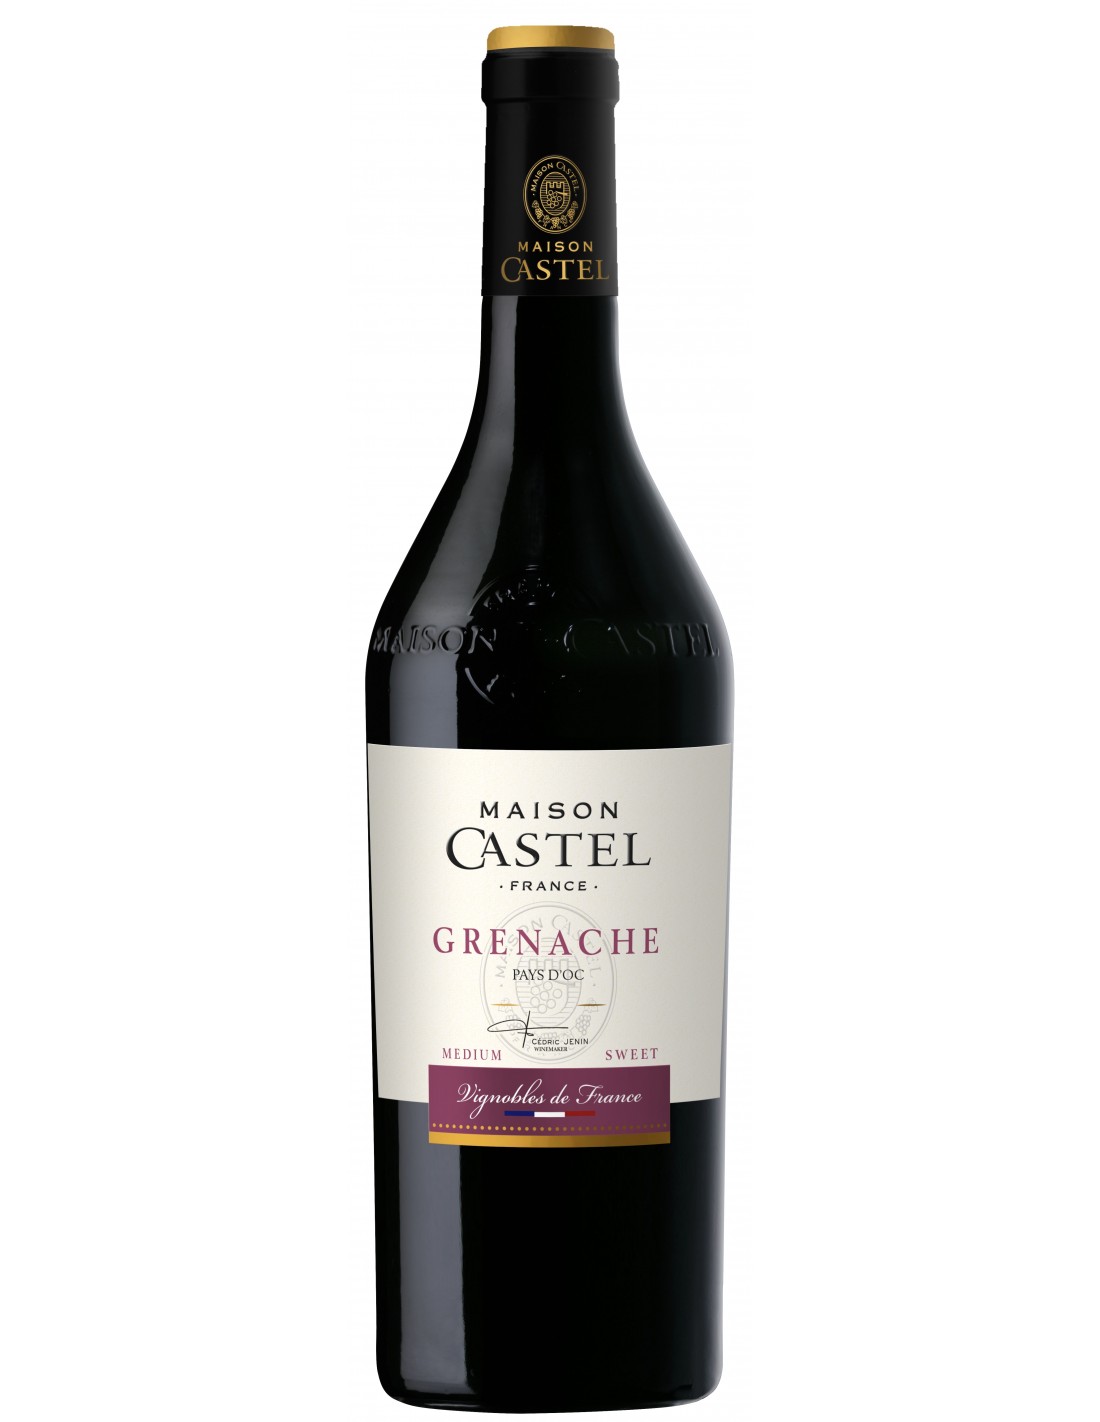 Vin rosu demidulce, Grenache, Maison Castel Pays d'Oc, 0.75L, 12.5% alc., Franta